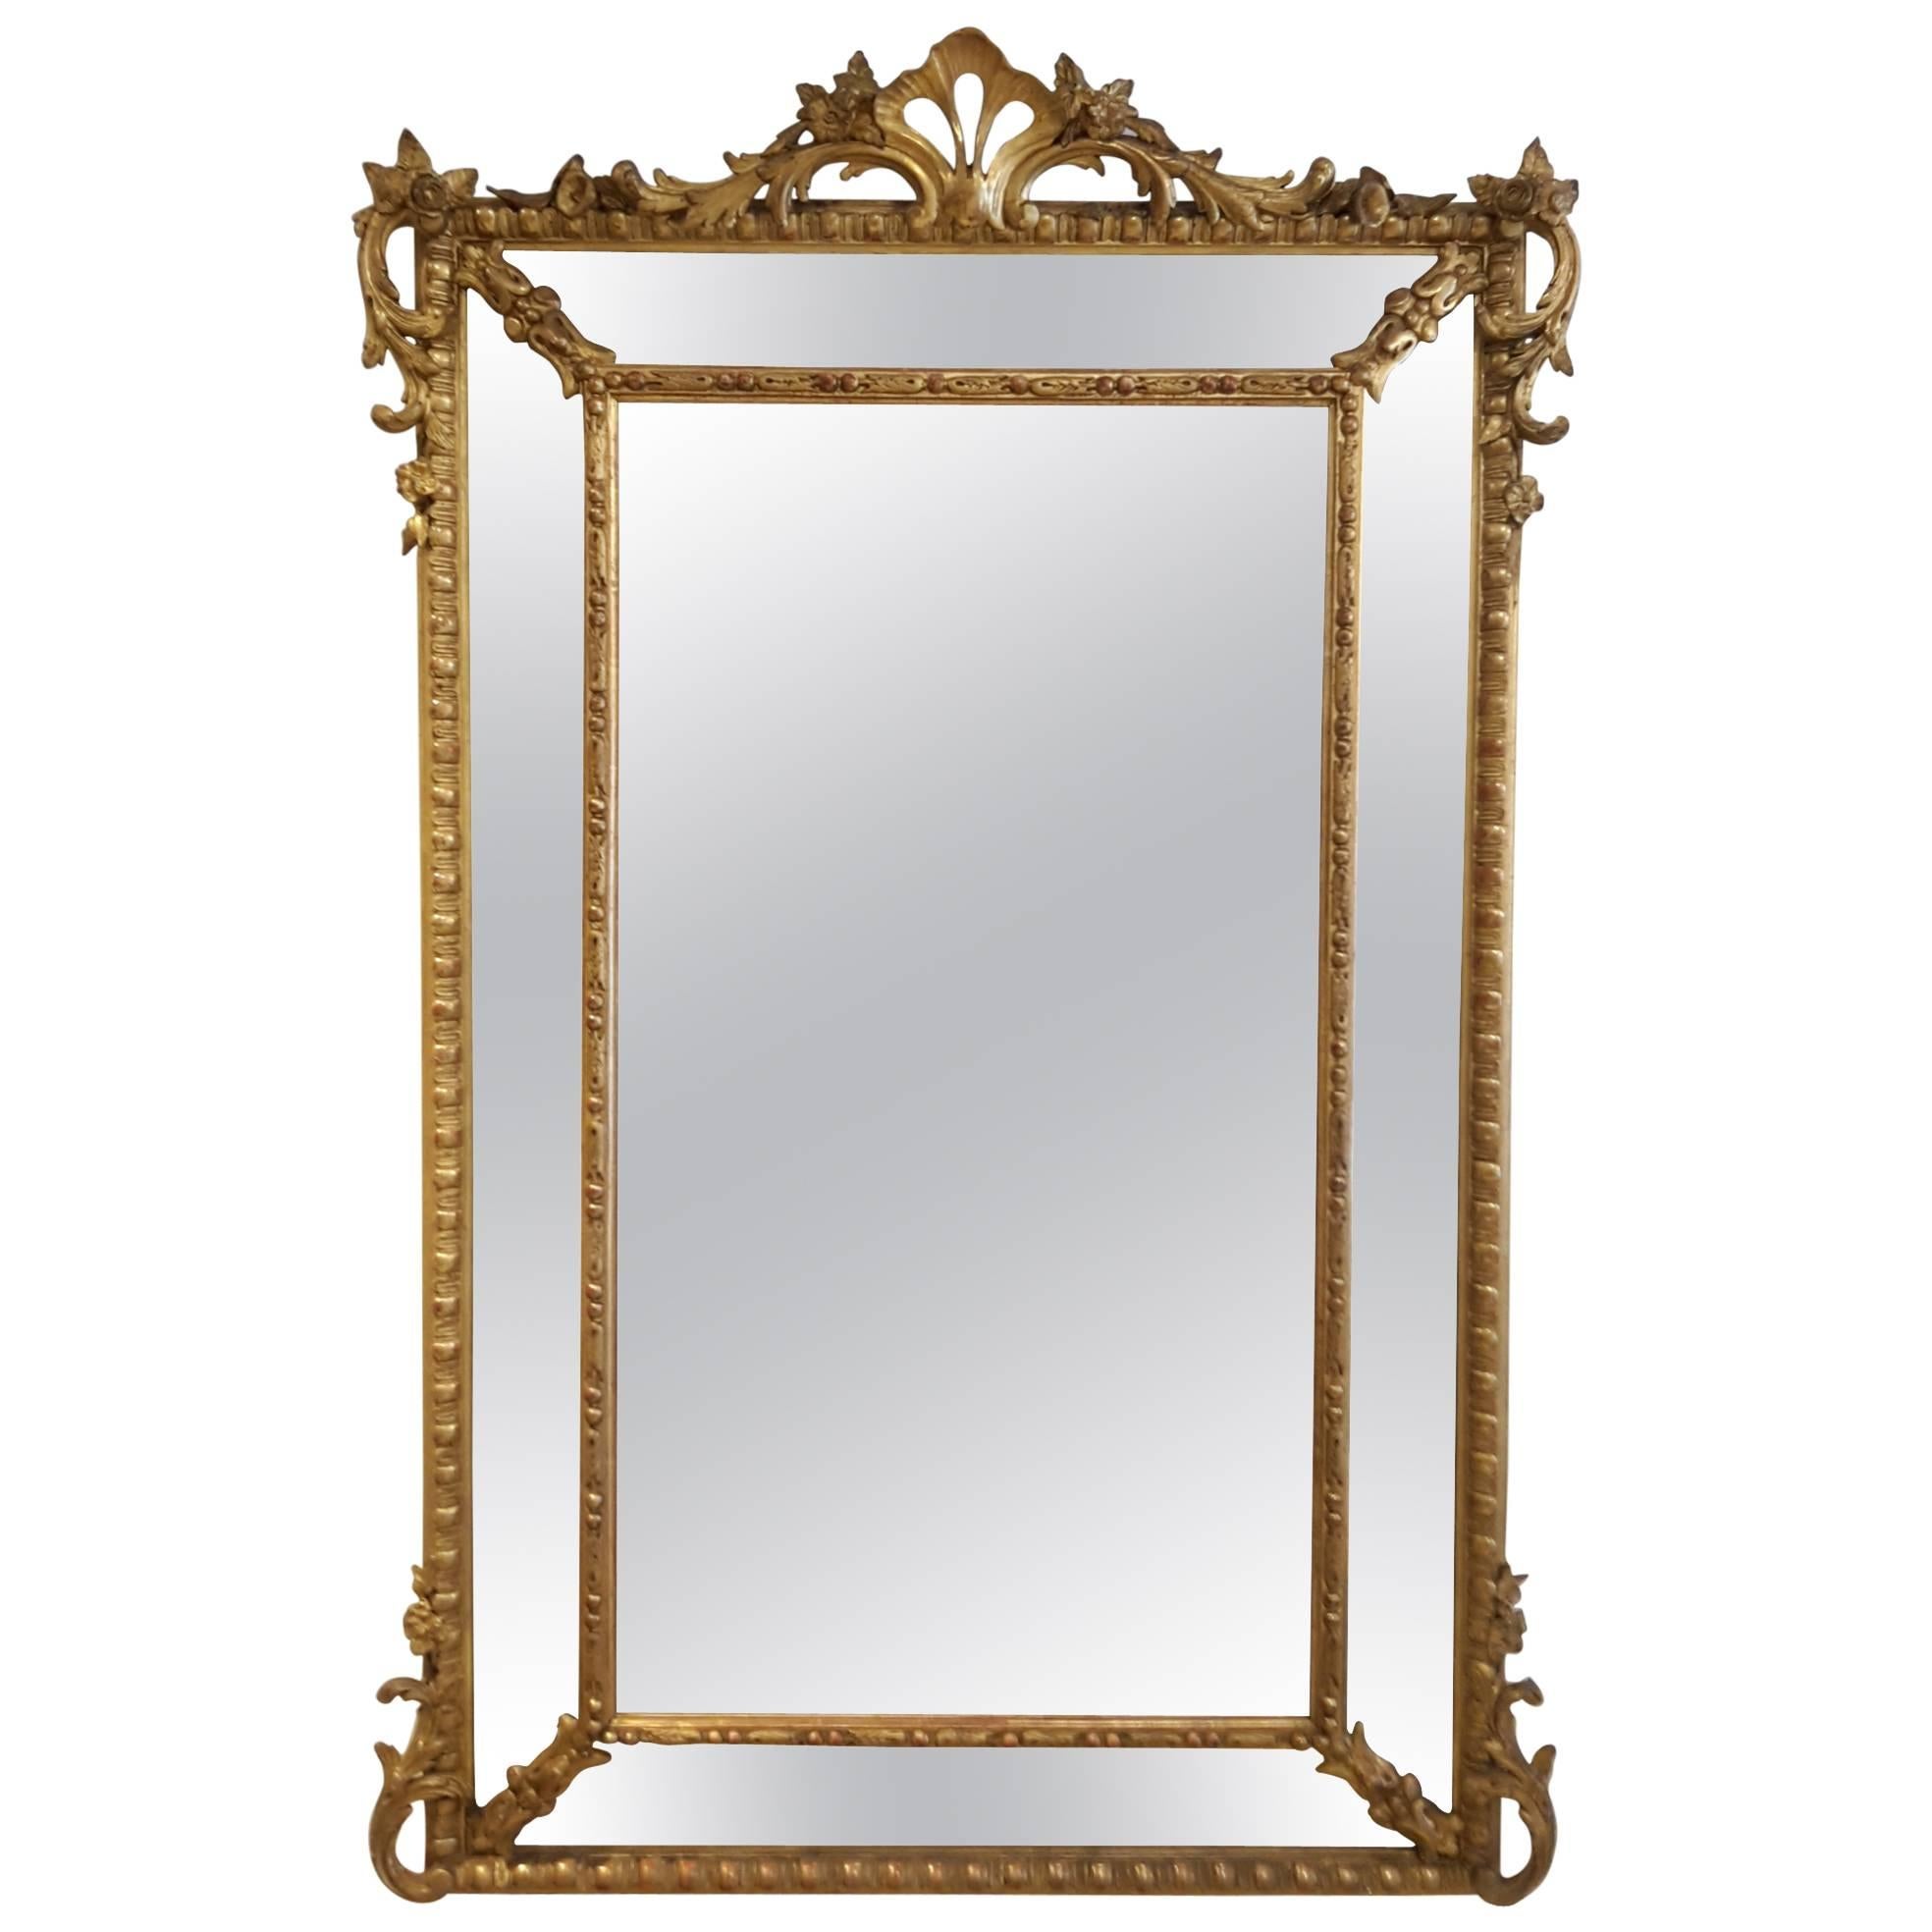 Antique French Napoleon III Mirror